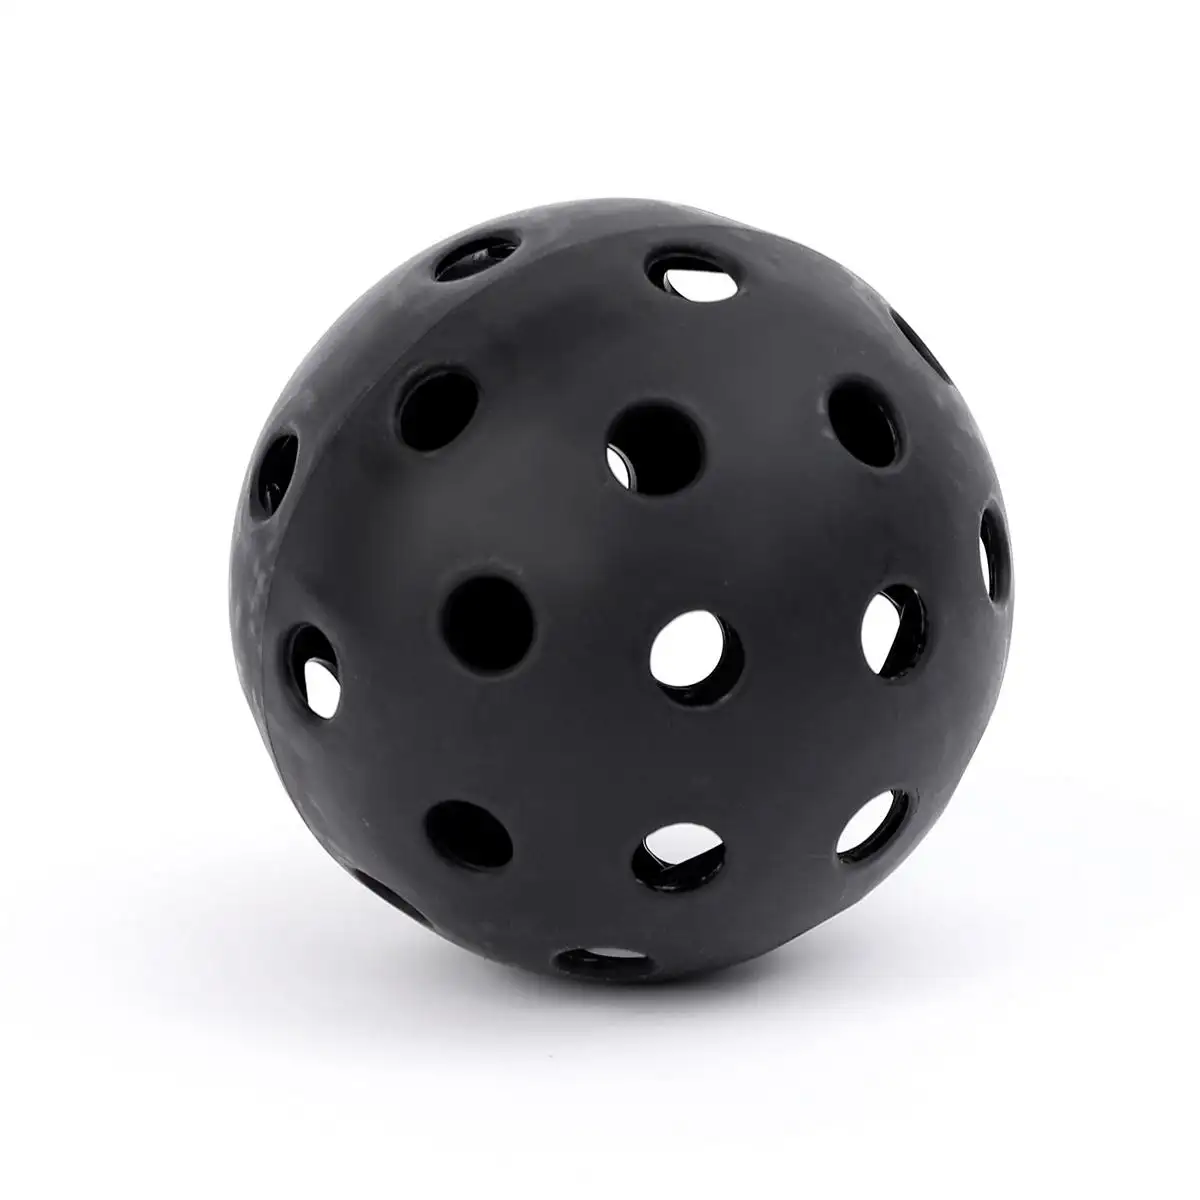 كرة التوت العالي 40 فتحة كرات التوت العالي X40 كرة التوت العالي في الأماكن الداخلية والخارجية كرات التوت العالي سوداء USAPA